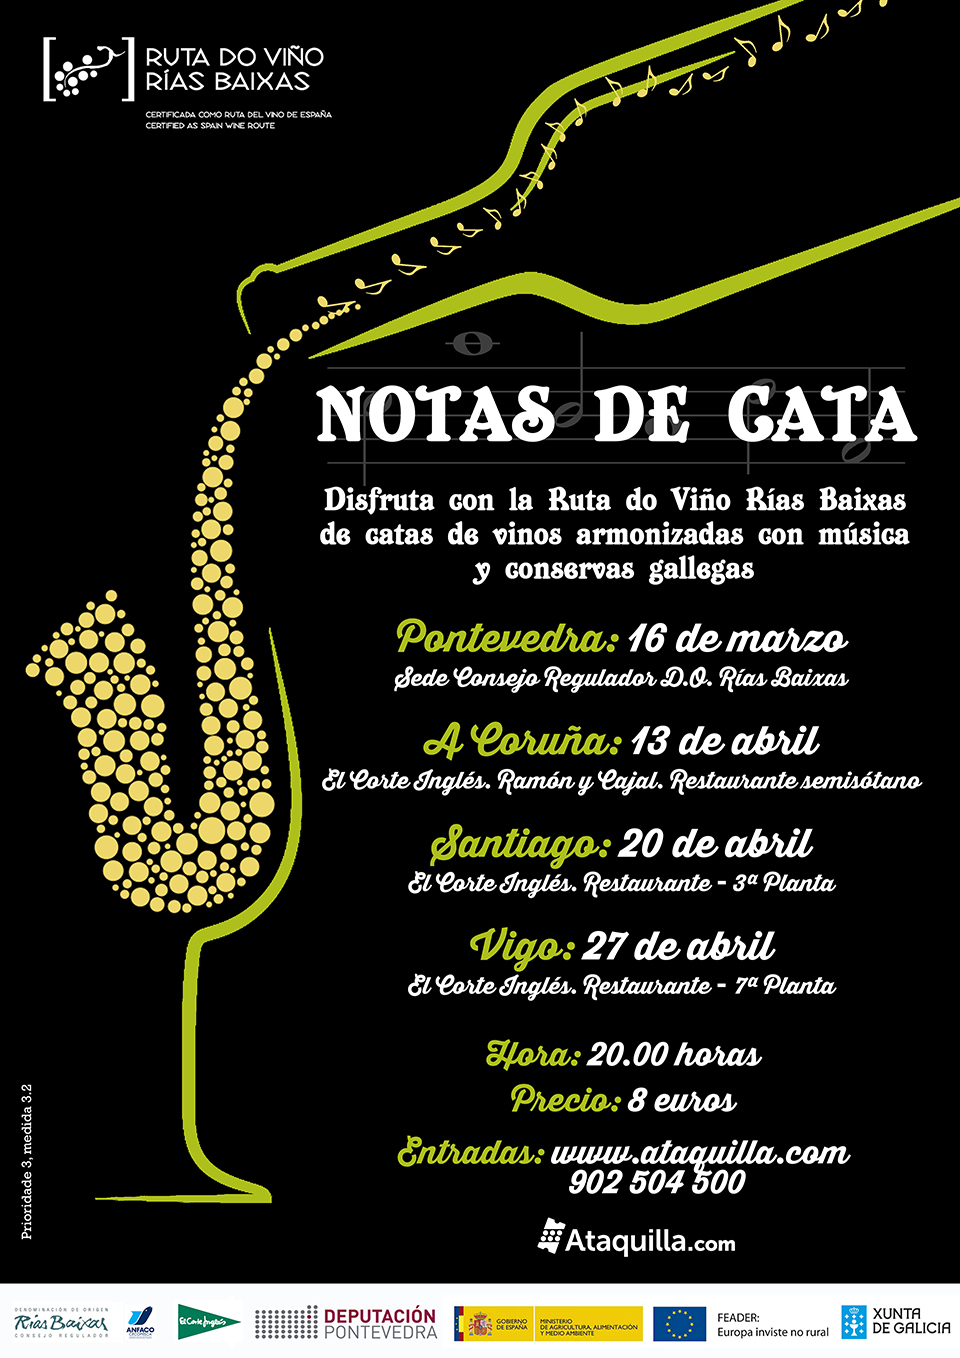 Las ‘Notas de Cata’ de la Ruta do Viño Rías Baixas llegan el próximo 20 de abril a El Corte Inglés de Santiago a ritmo de bandas sonoras de películas